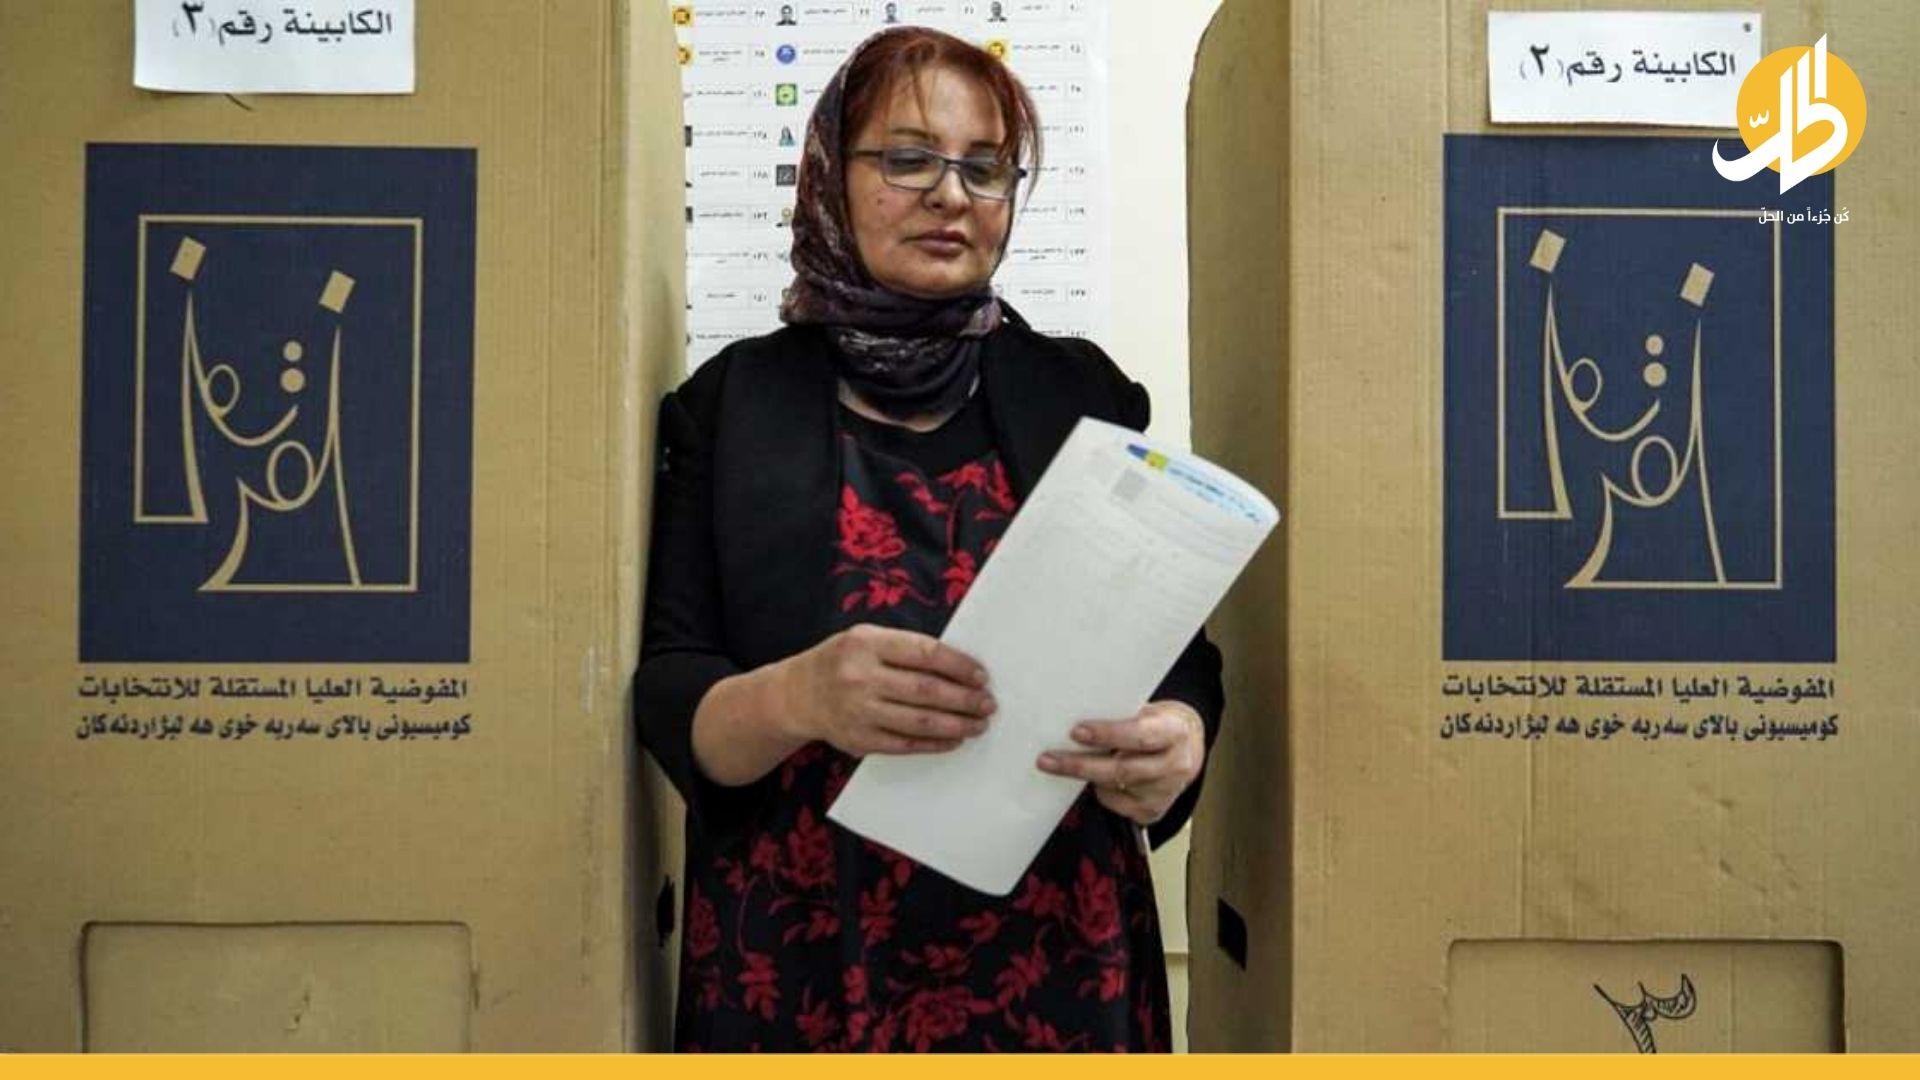 الإعلان عن النتائج النهائية للانتخابات العراقية بشكل رسمي – فيديو